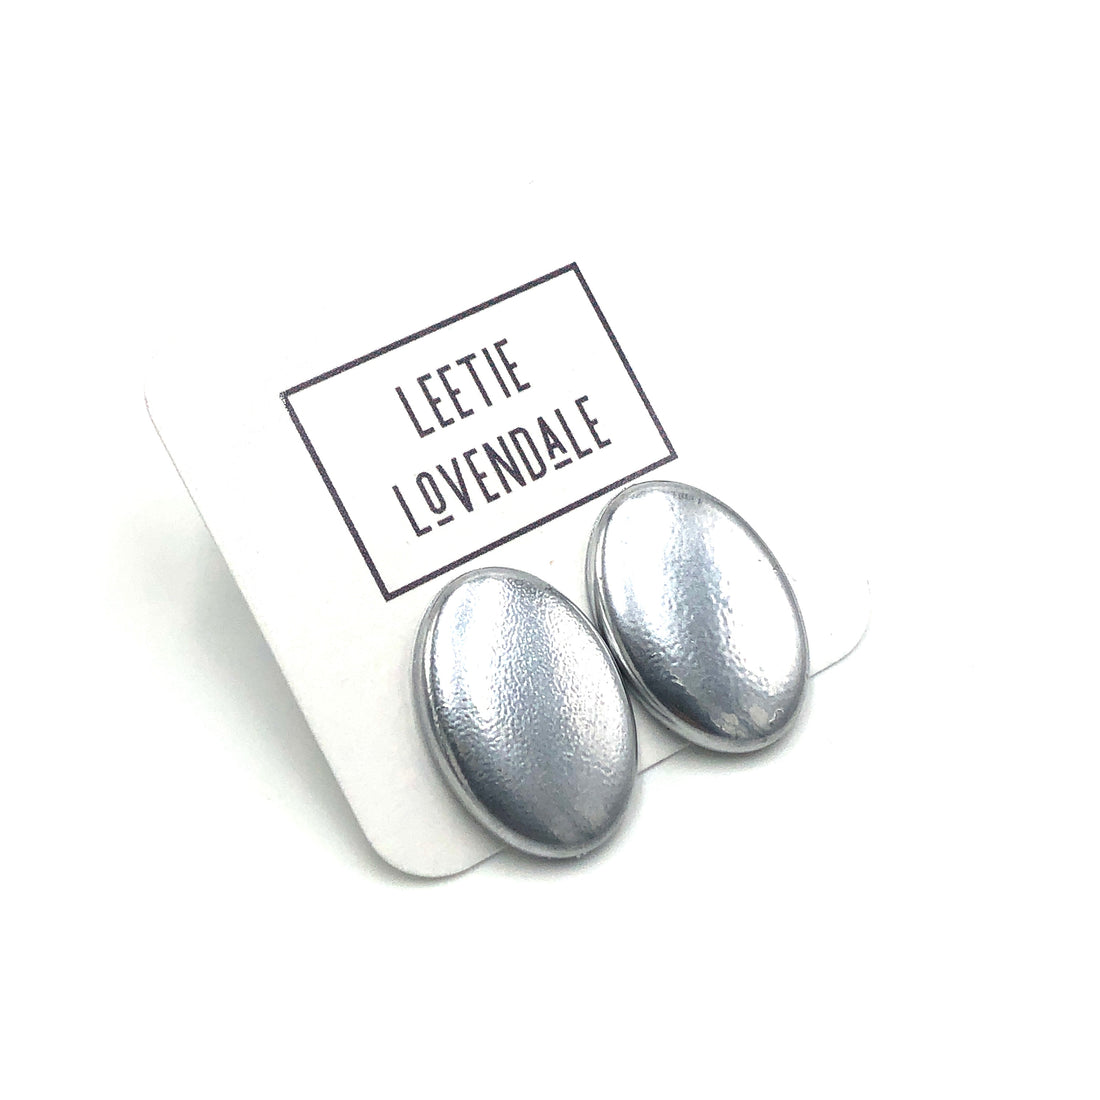 Shabby Metallic Silver Oval Stud Earrings